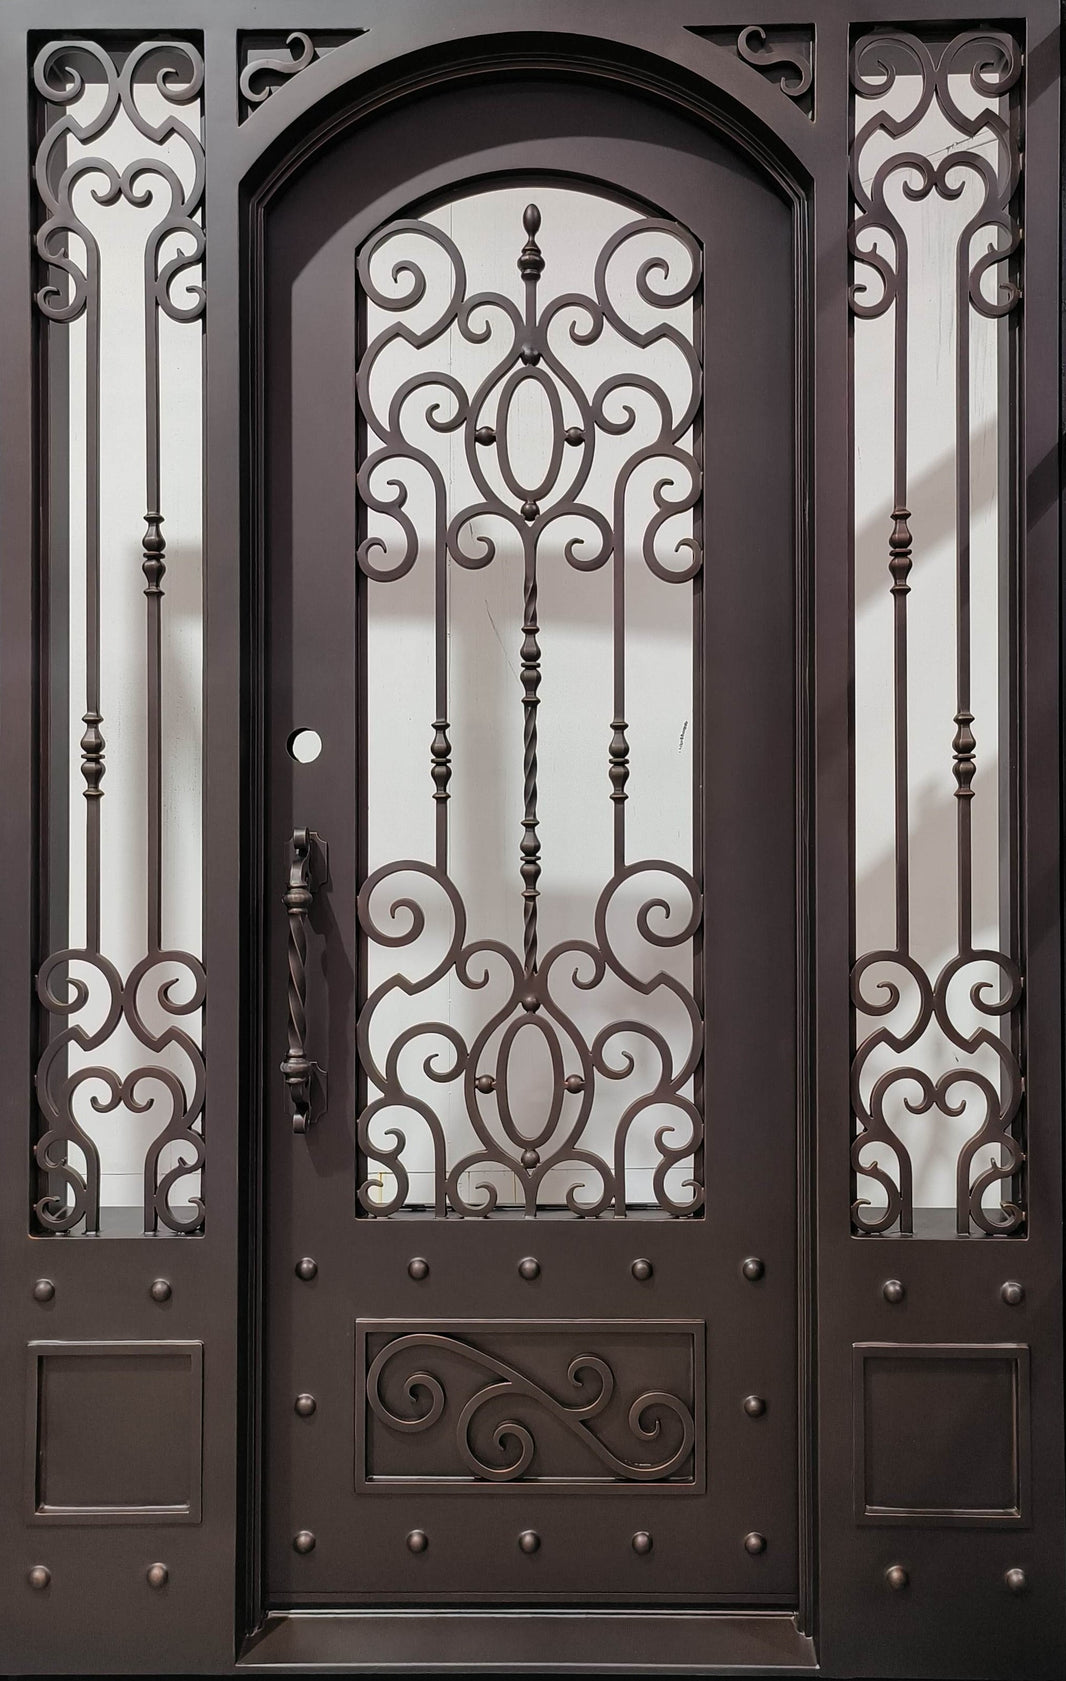 Classic wrought Iron Design Door | Curved Top | Model # IWD 1035